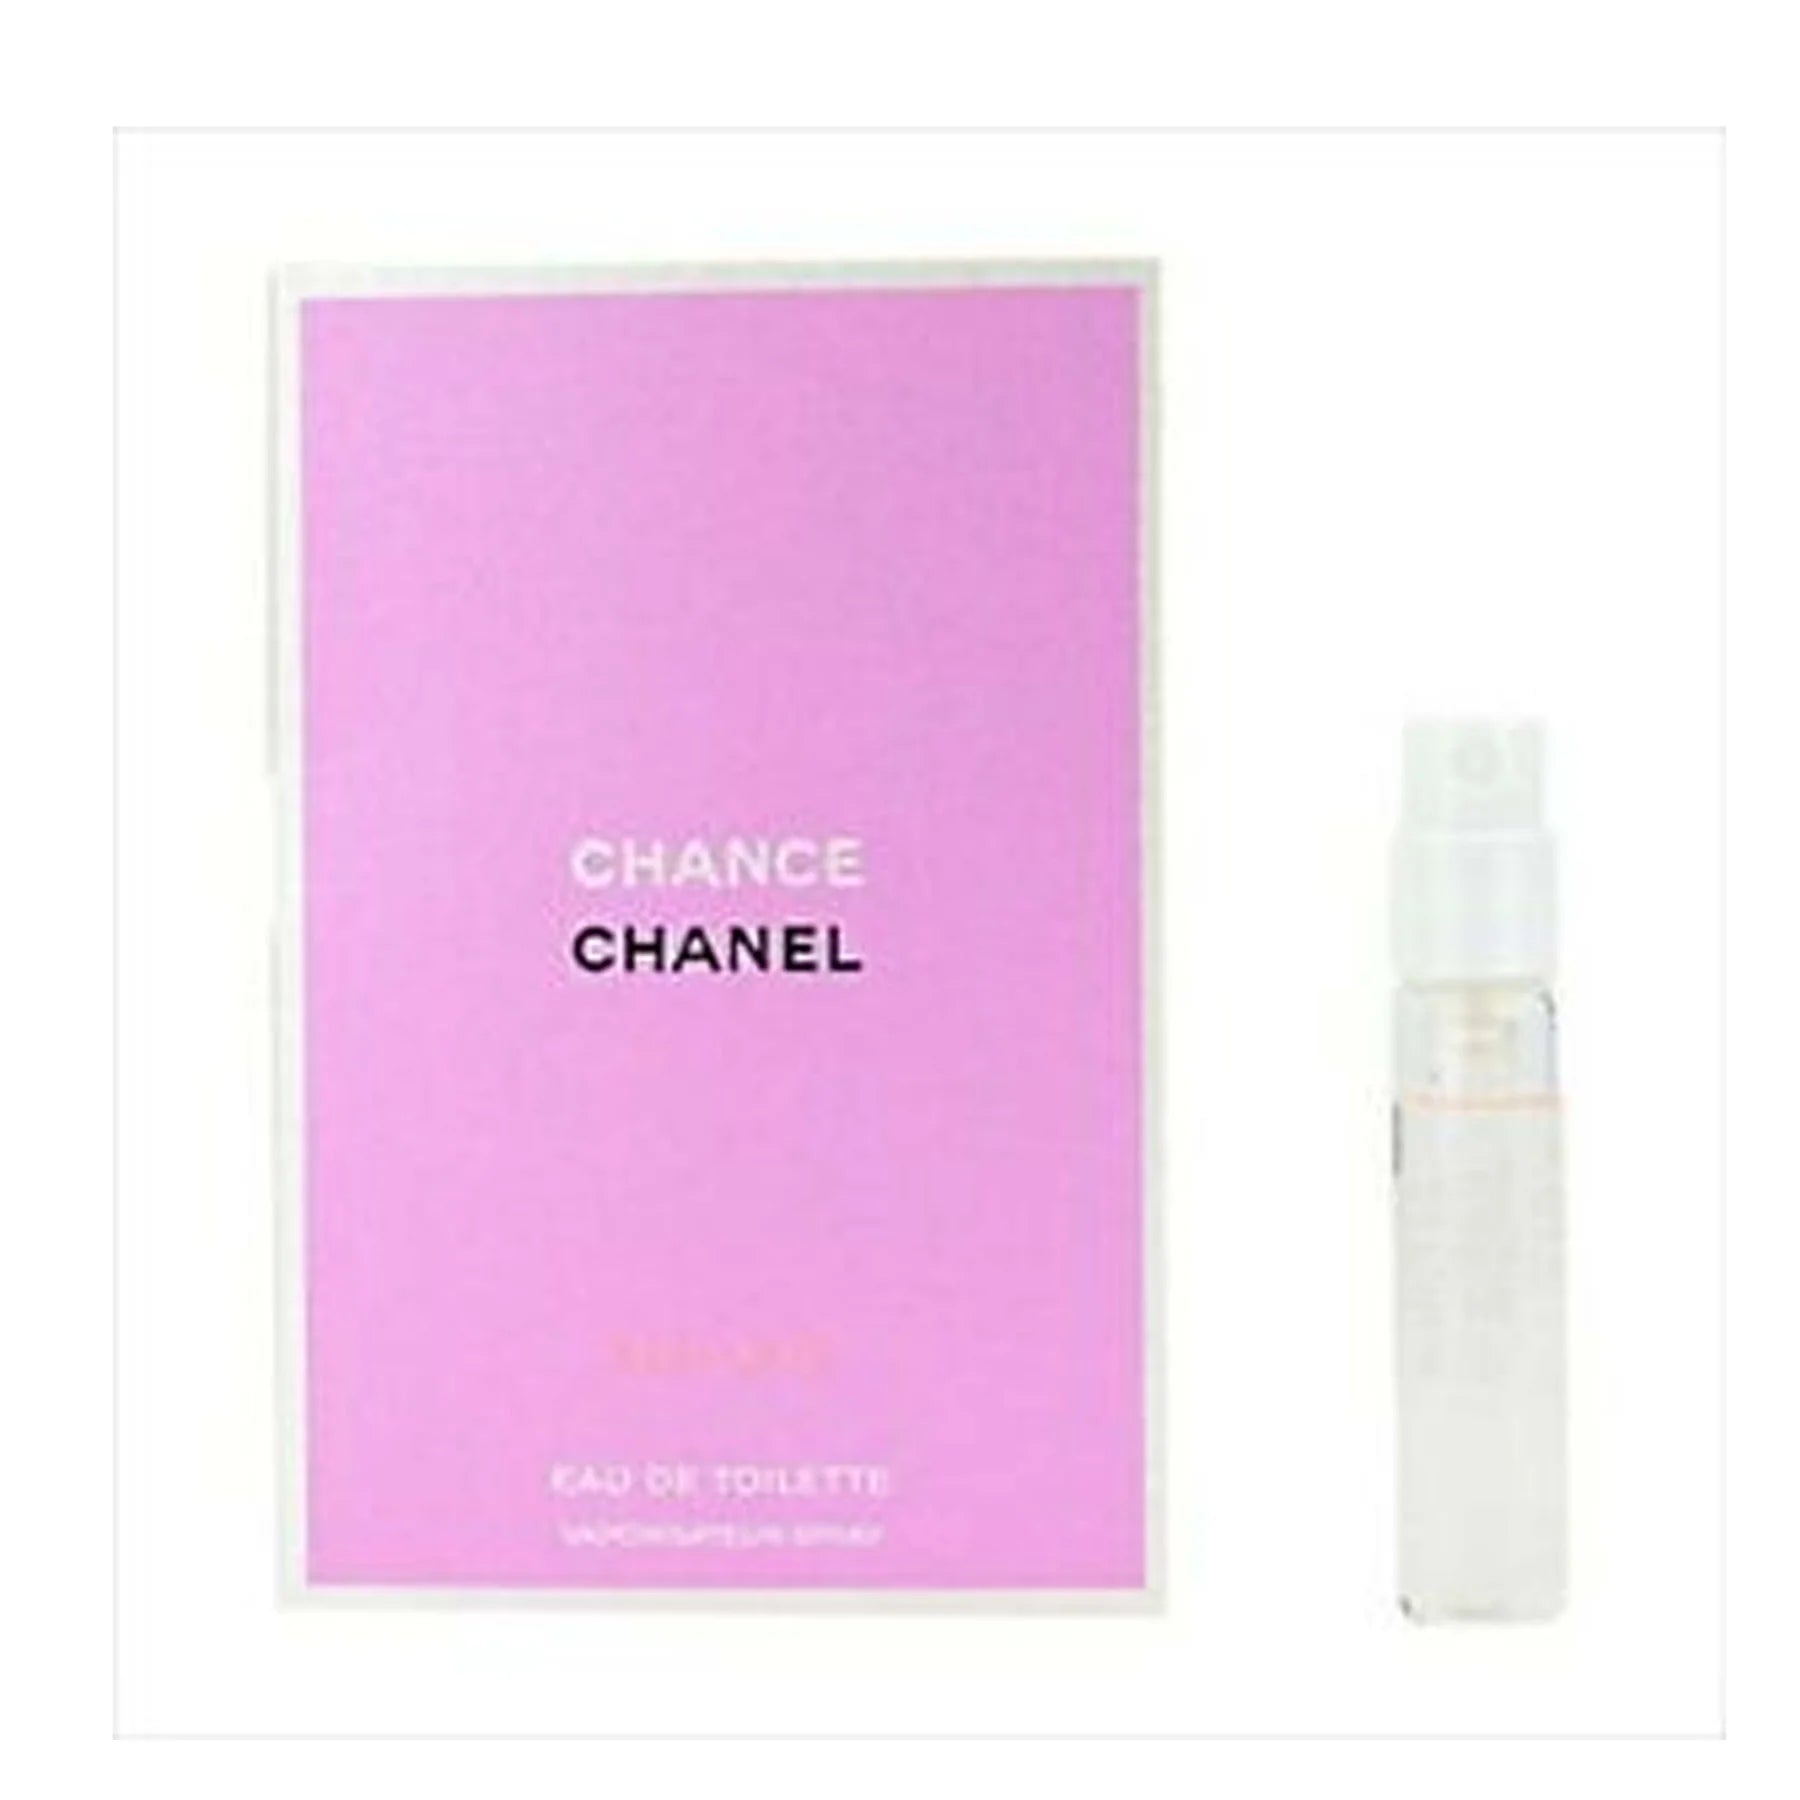  Chanel Chance Eau Vive Eau de Toilette Spray for